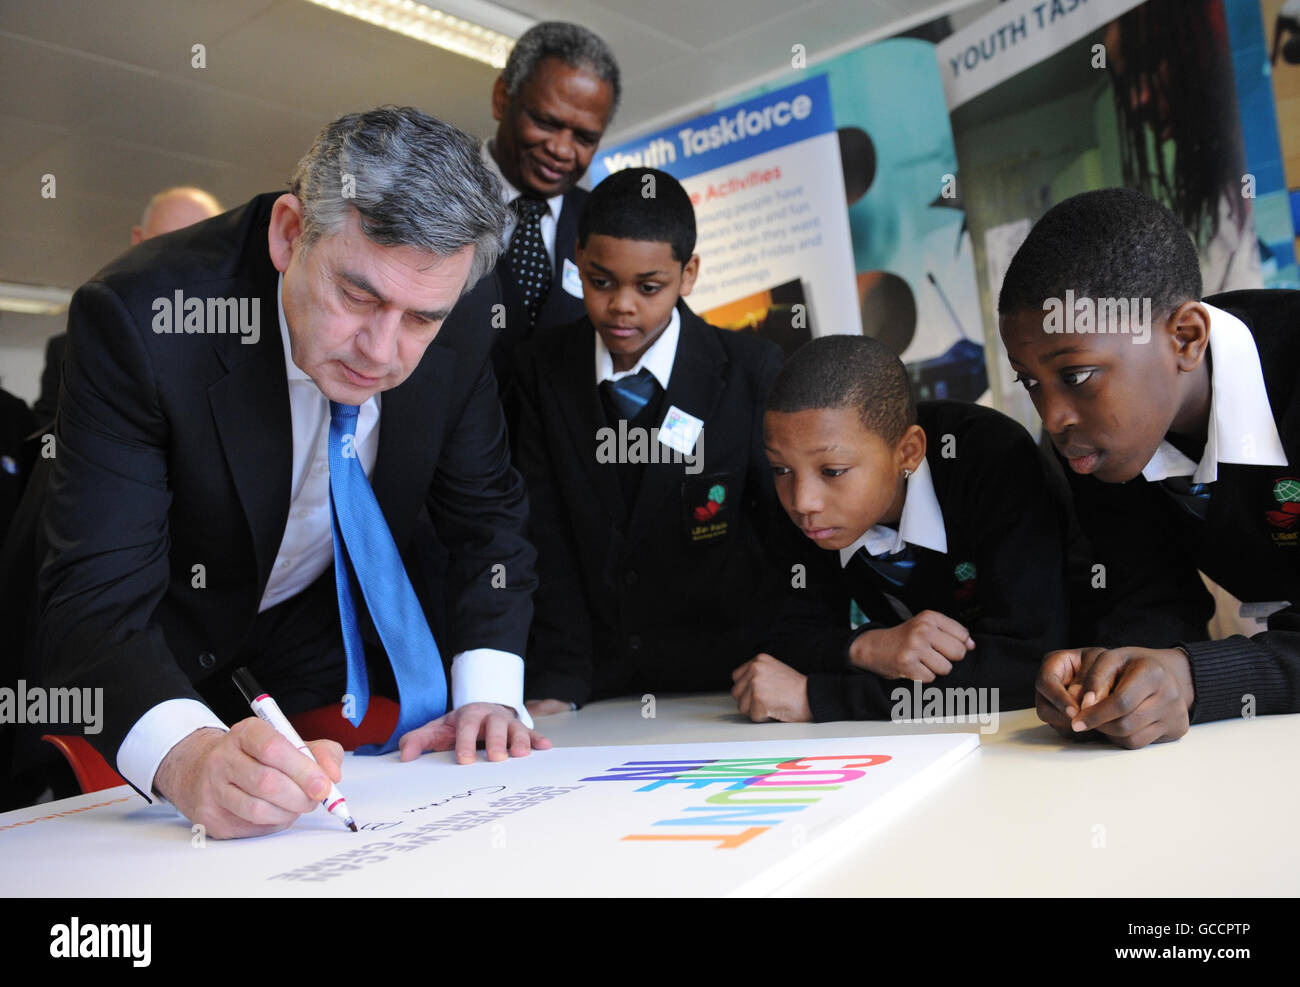 El primer ministro Gordon Brown se reúne con alumnos en la Escuela de Tecnología Lilian Bayliss en el sur de Londres, donde ayudó a lanzar la campaña "Cont Me In: Together We Can Stop Knife Crime" para erradicar el crimen de cuchillo juvenil. Foto de stock